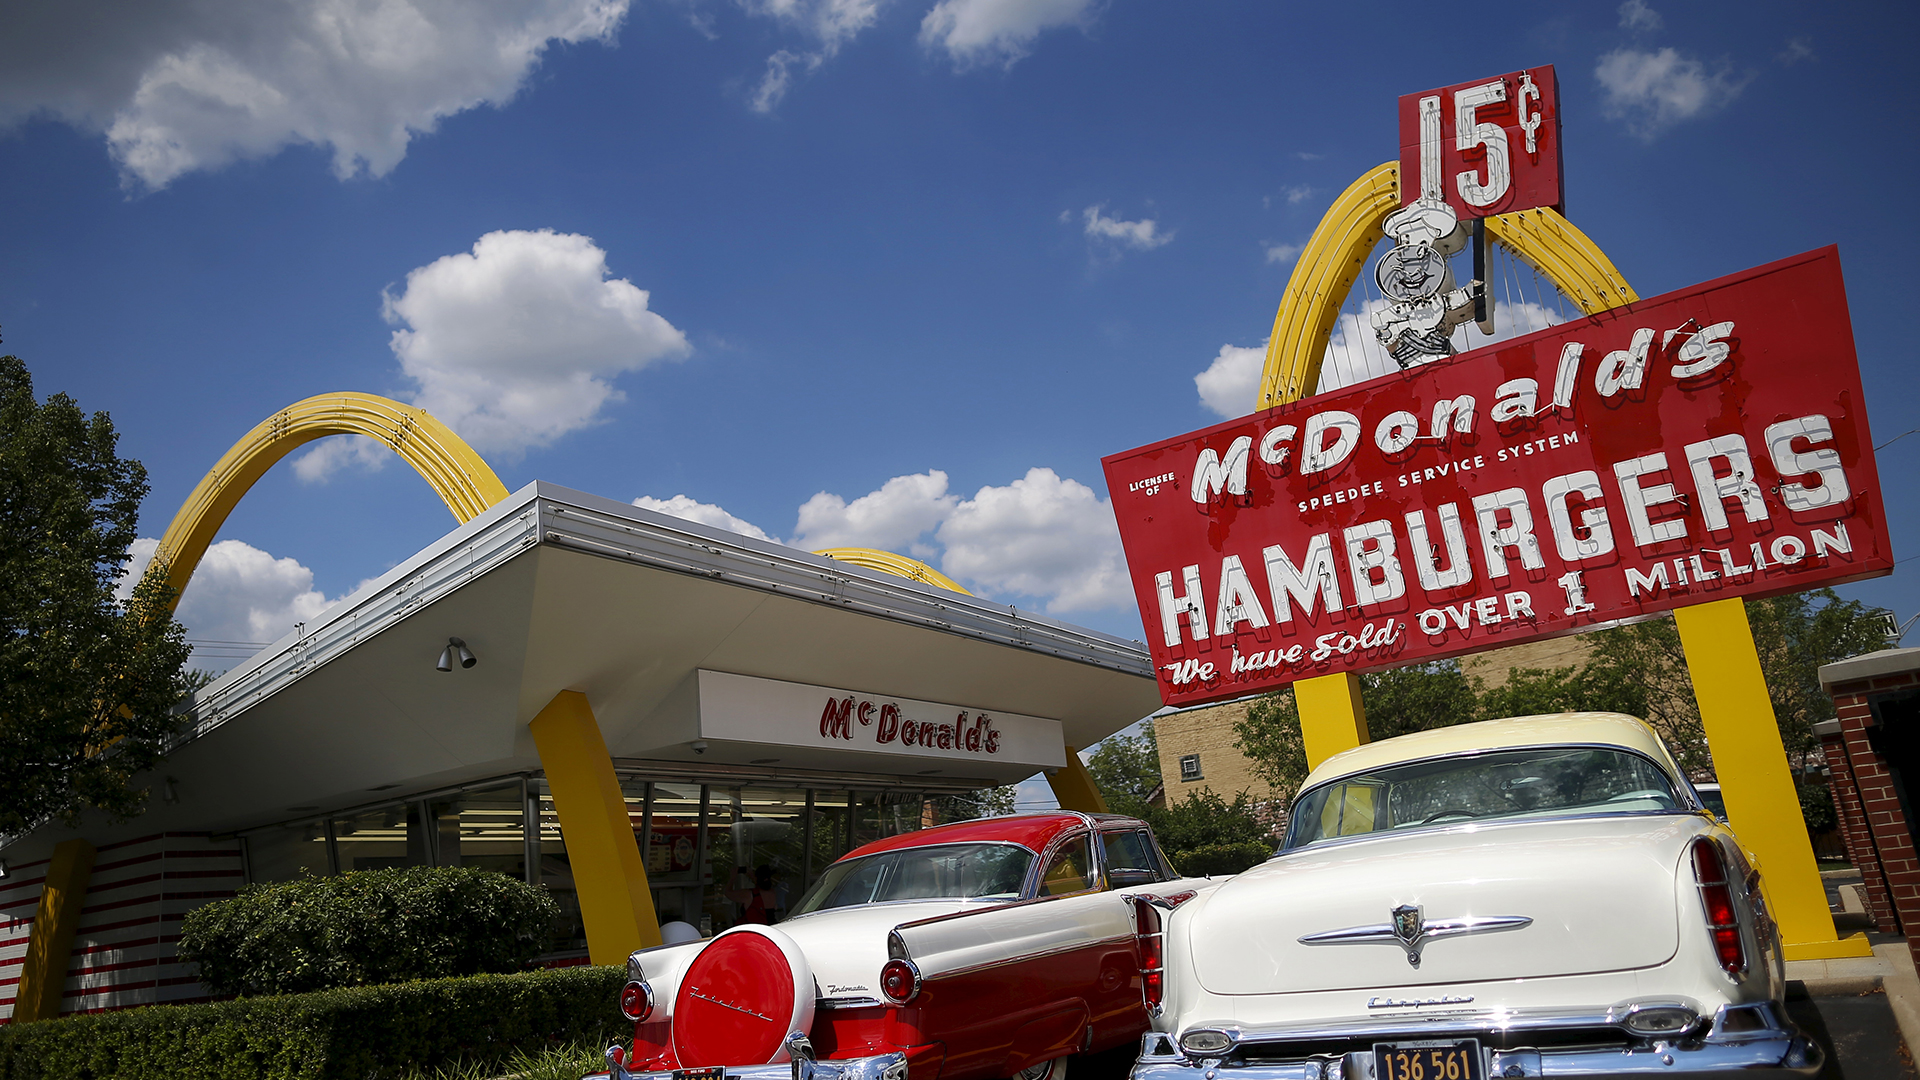 McDonald's lanza y luego borra un tuit que insulta a Trump